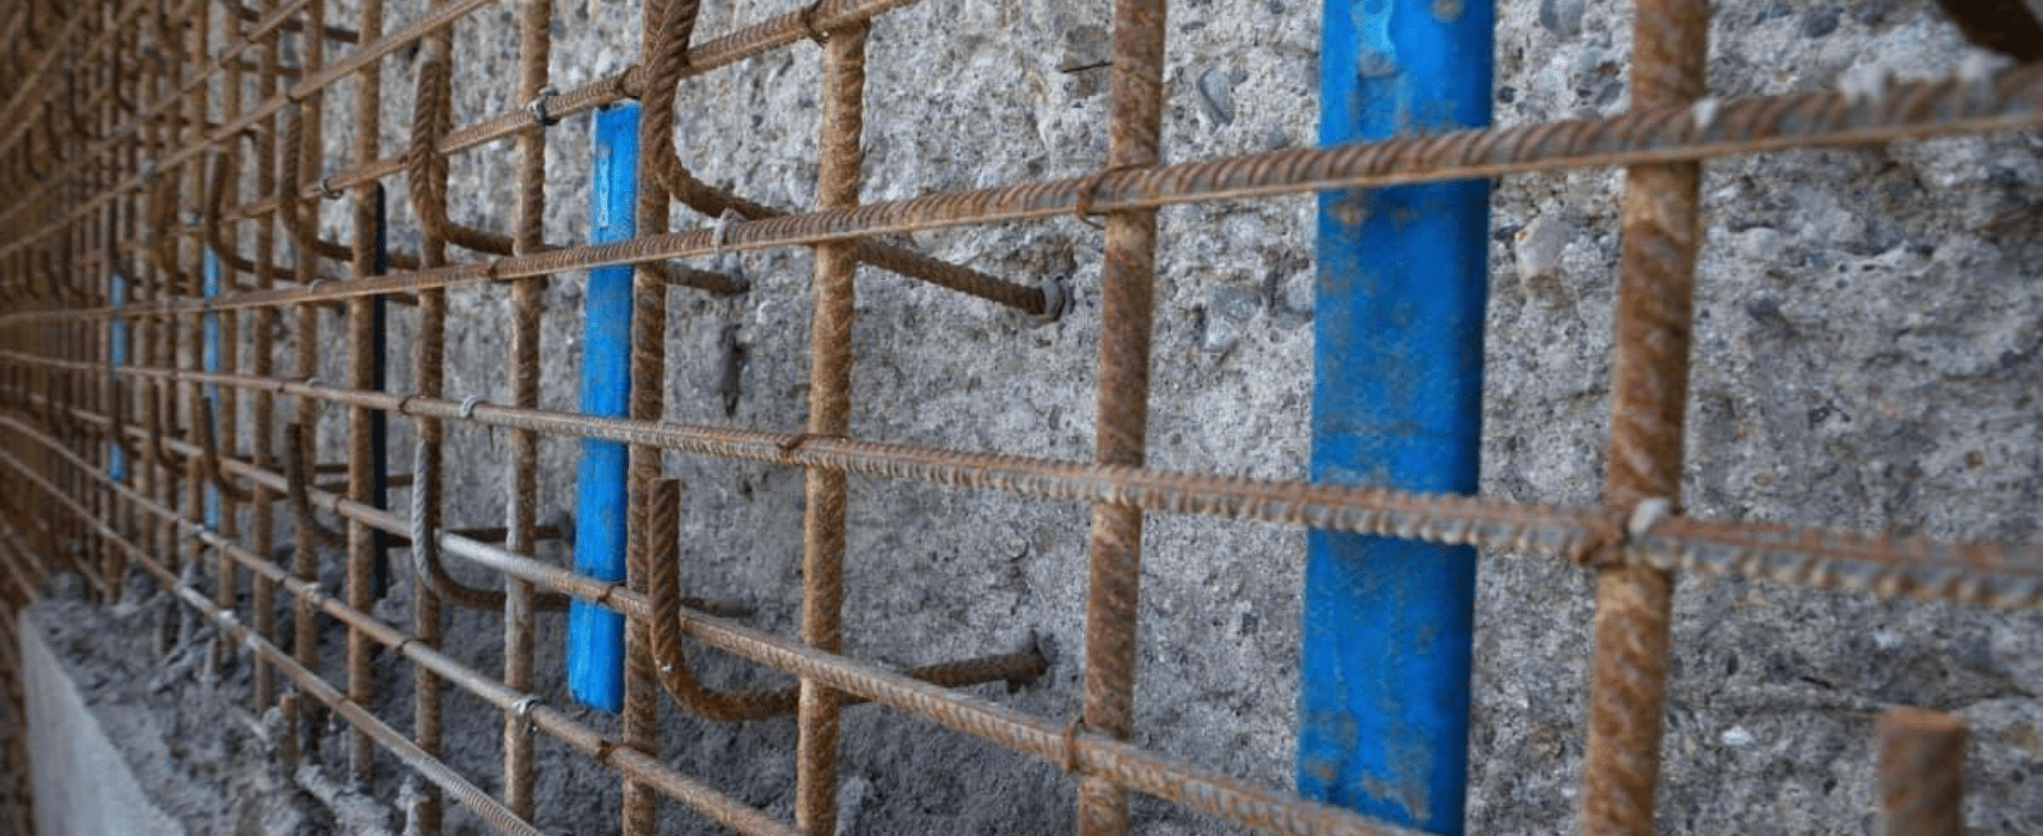 Katódos védelem a betonacélok korróziójával szemben